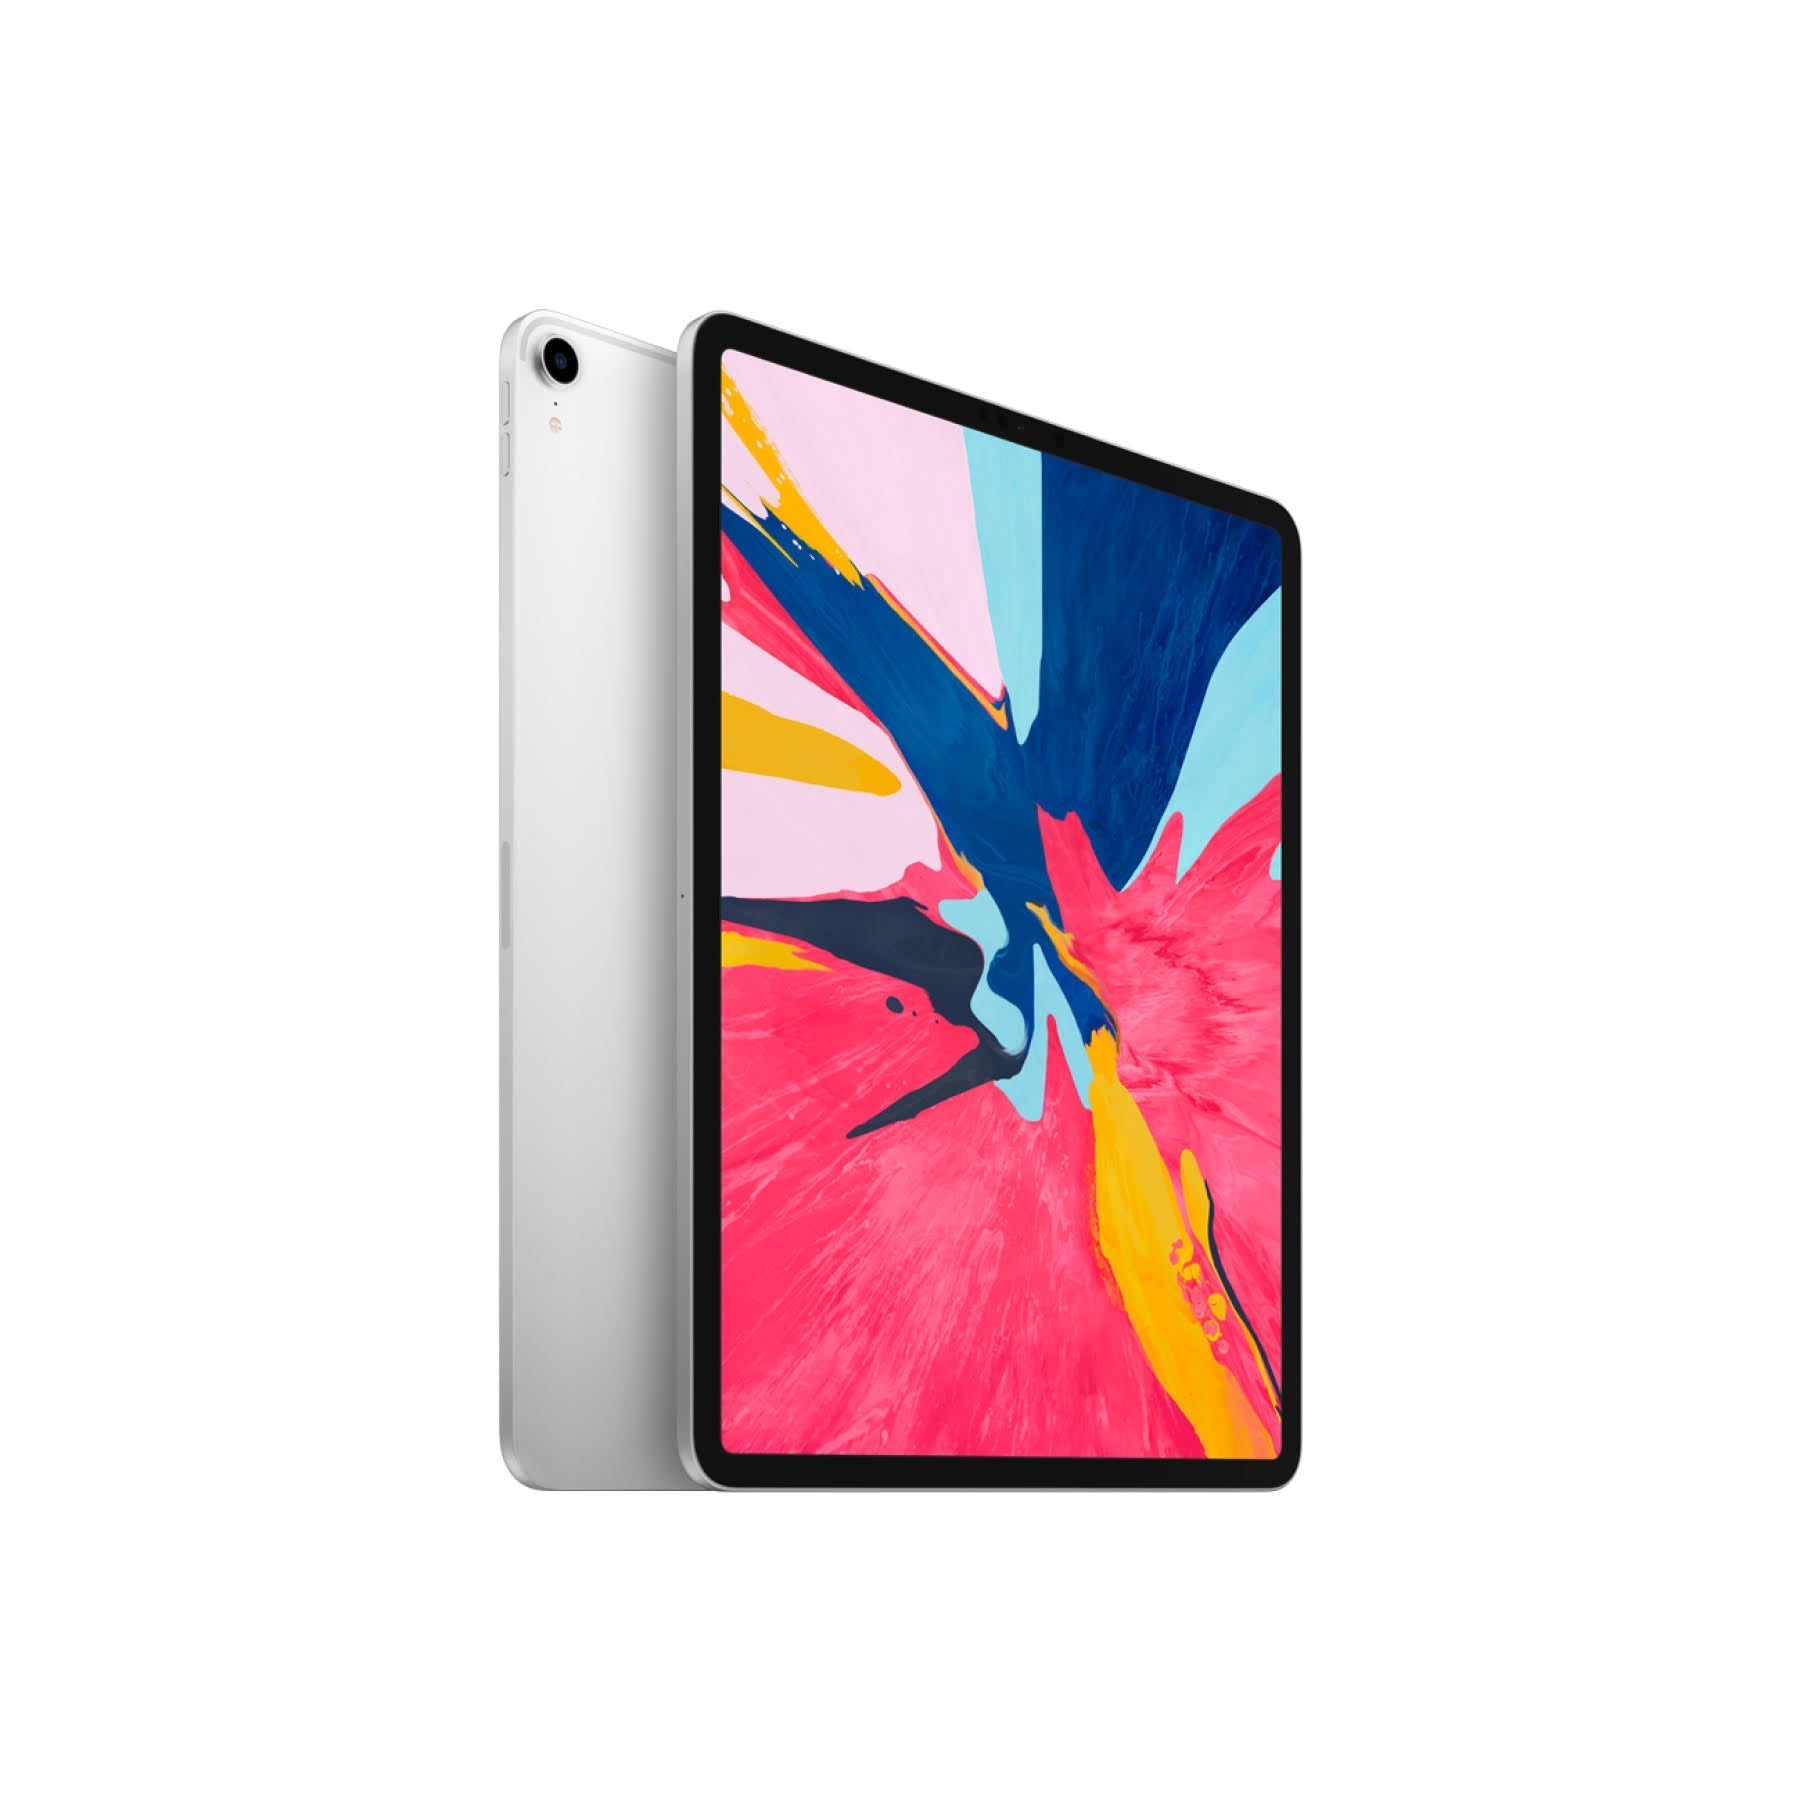 iPad Air 2 9.7-inch (2014) Wi-Fi + Cellular 128GB - Space Grey (Good) (7167255314587)